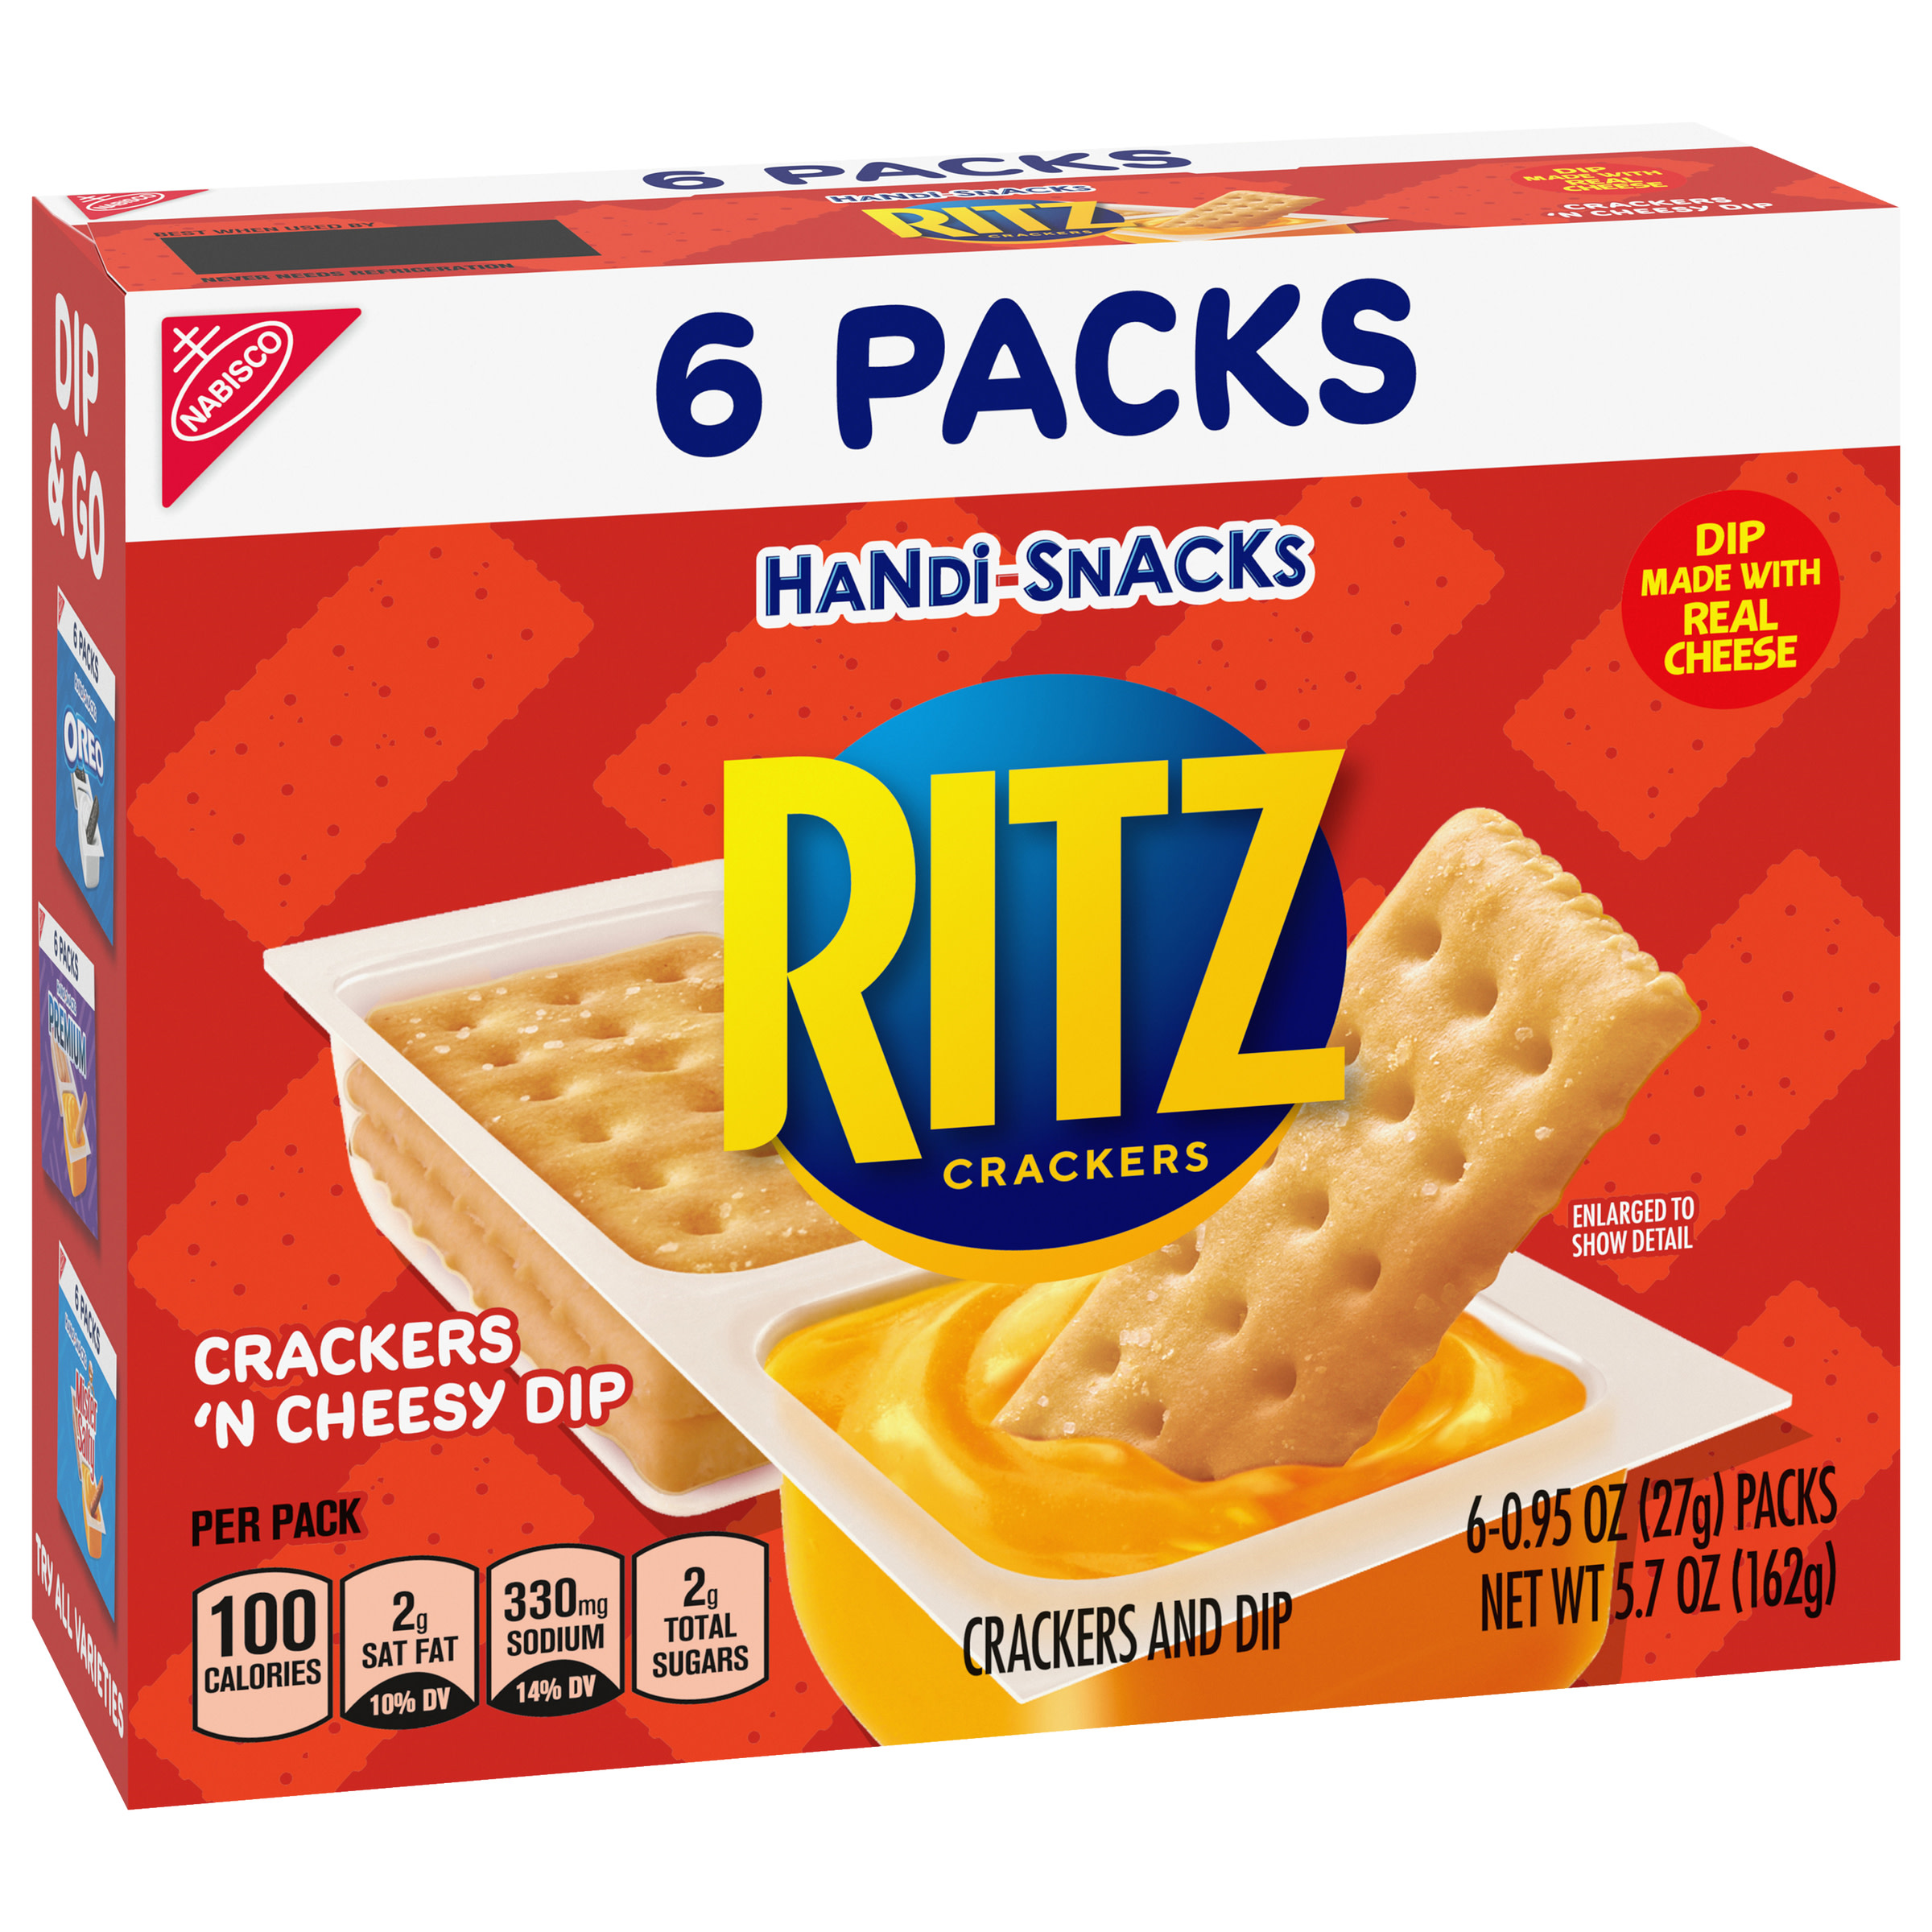 Handi-Snacks RITZ Crackers 'N Cheesy Dip Snack Packs, 6 Snack Packs - image 2 of 14